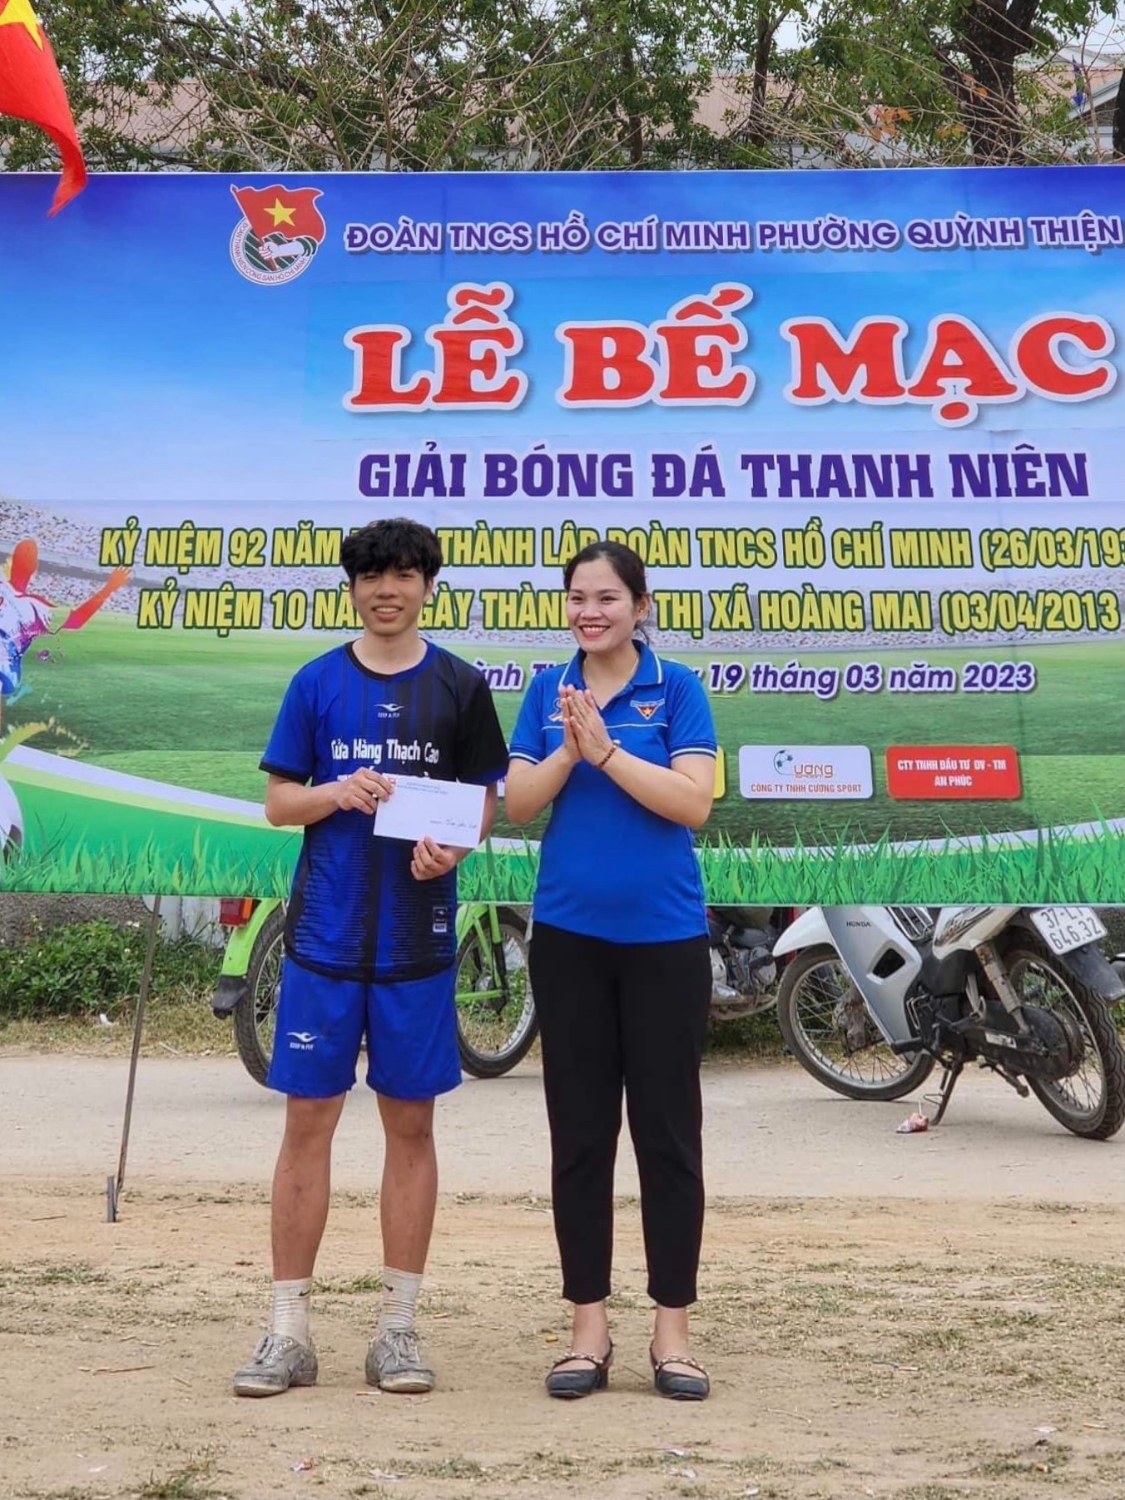 Đồng chí Nguyễn Thị Quỳnh Yên - Bí thư đoàn TN phường trao giải cầu thủ ghi nhiều bàn thắng nhất